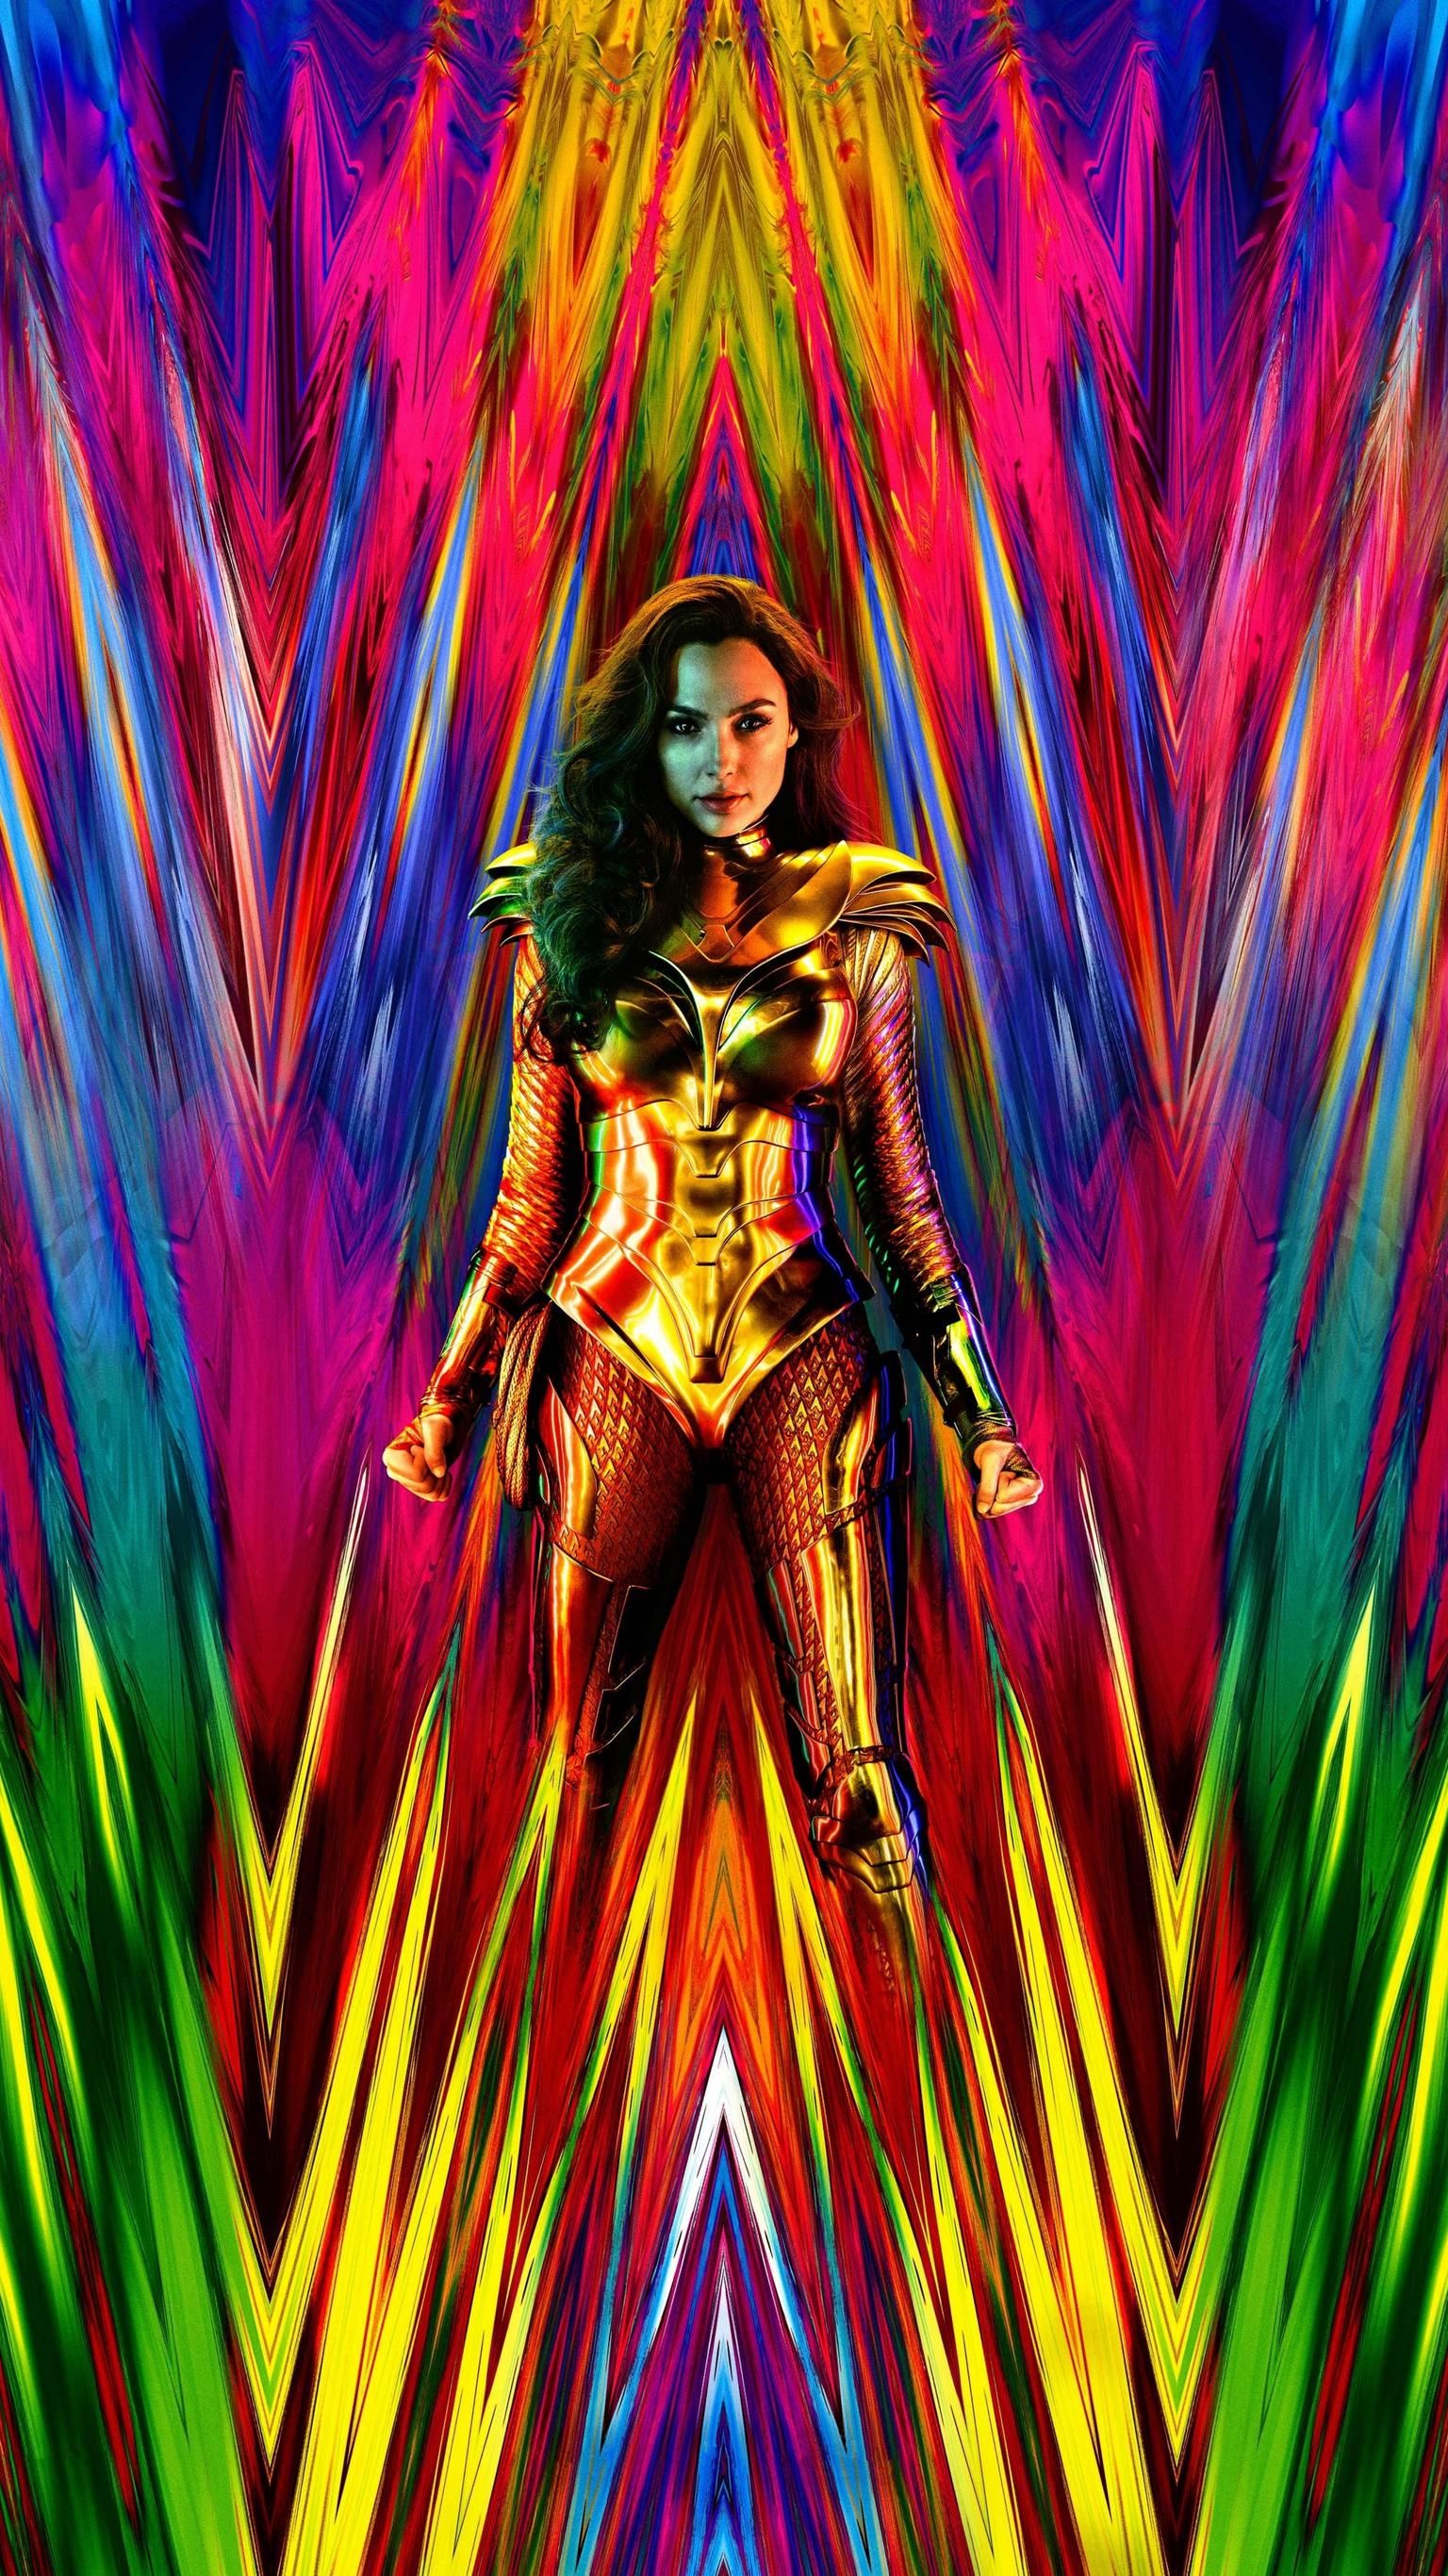 Gal As Wonder Woman 1984 4K Wallpapers